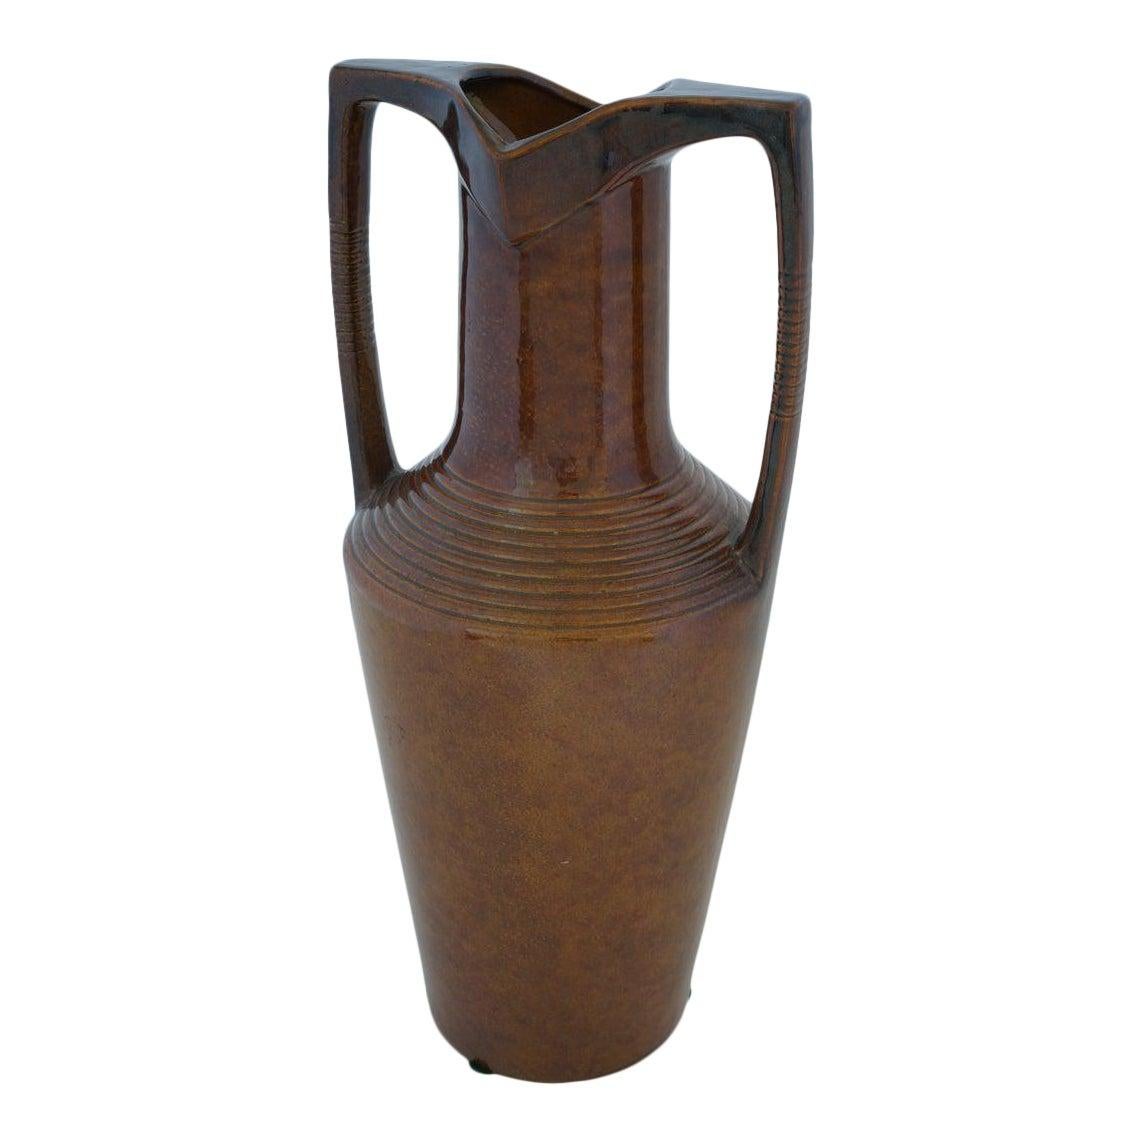 Art Deco Egyptian Revival Vase